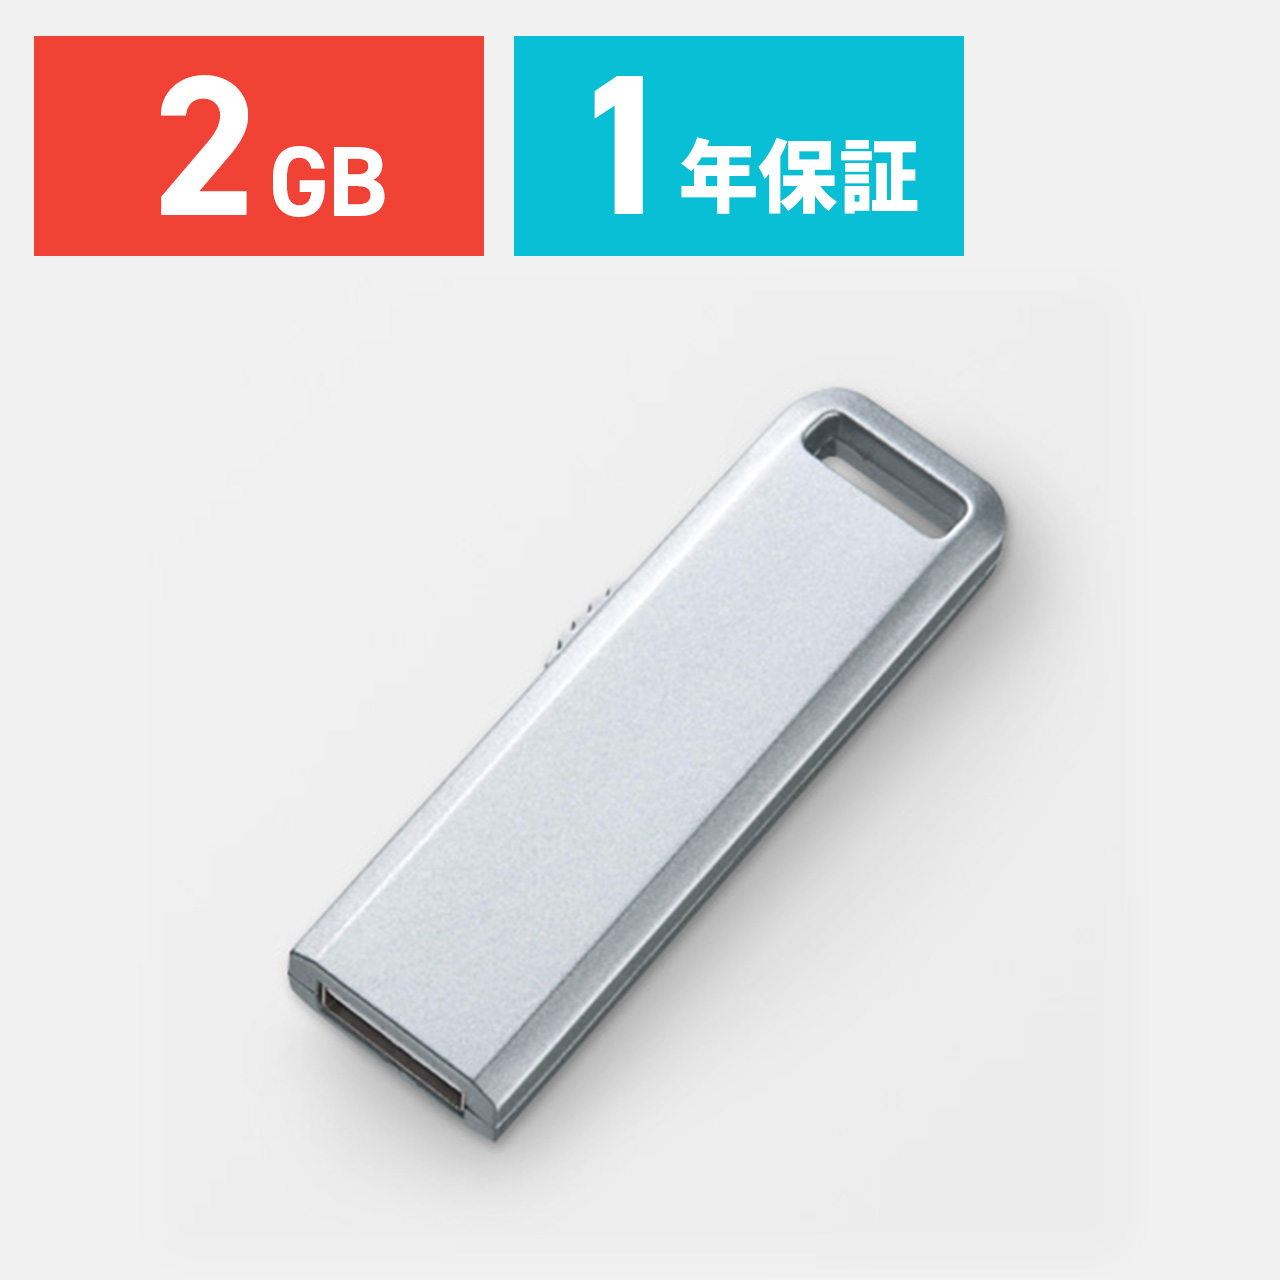 USBメモリ 2GB USB メモリー 2GB スライド式 シルバー 600-UL2GSV